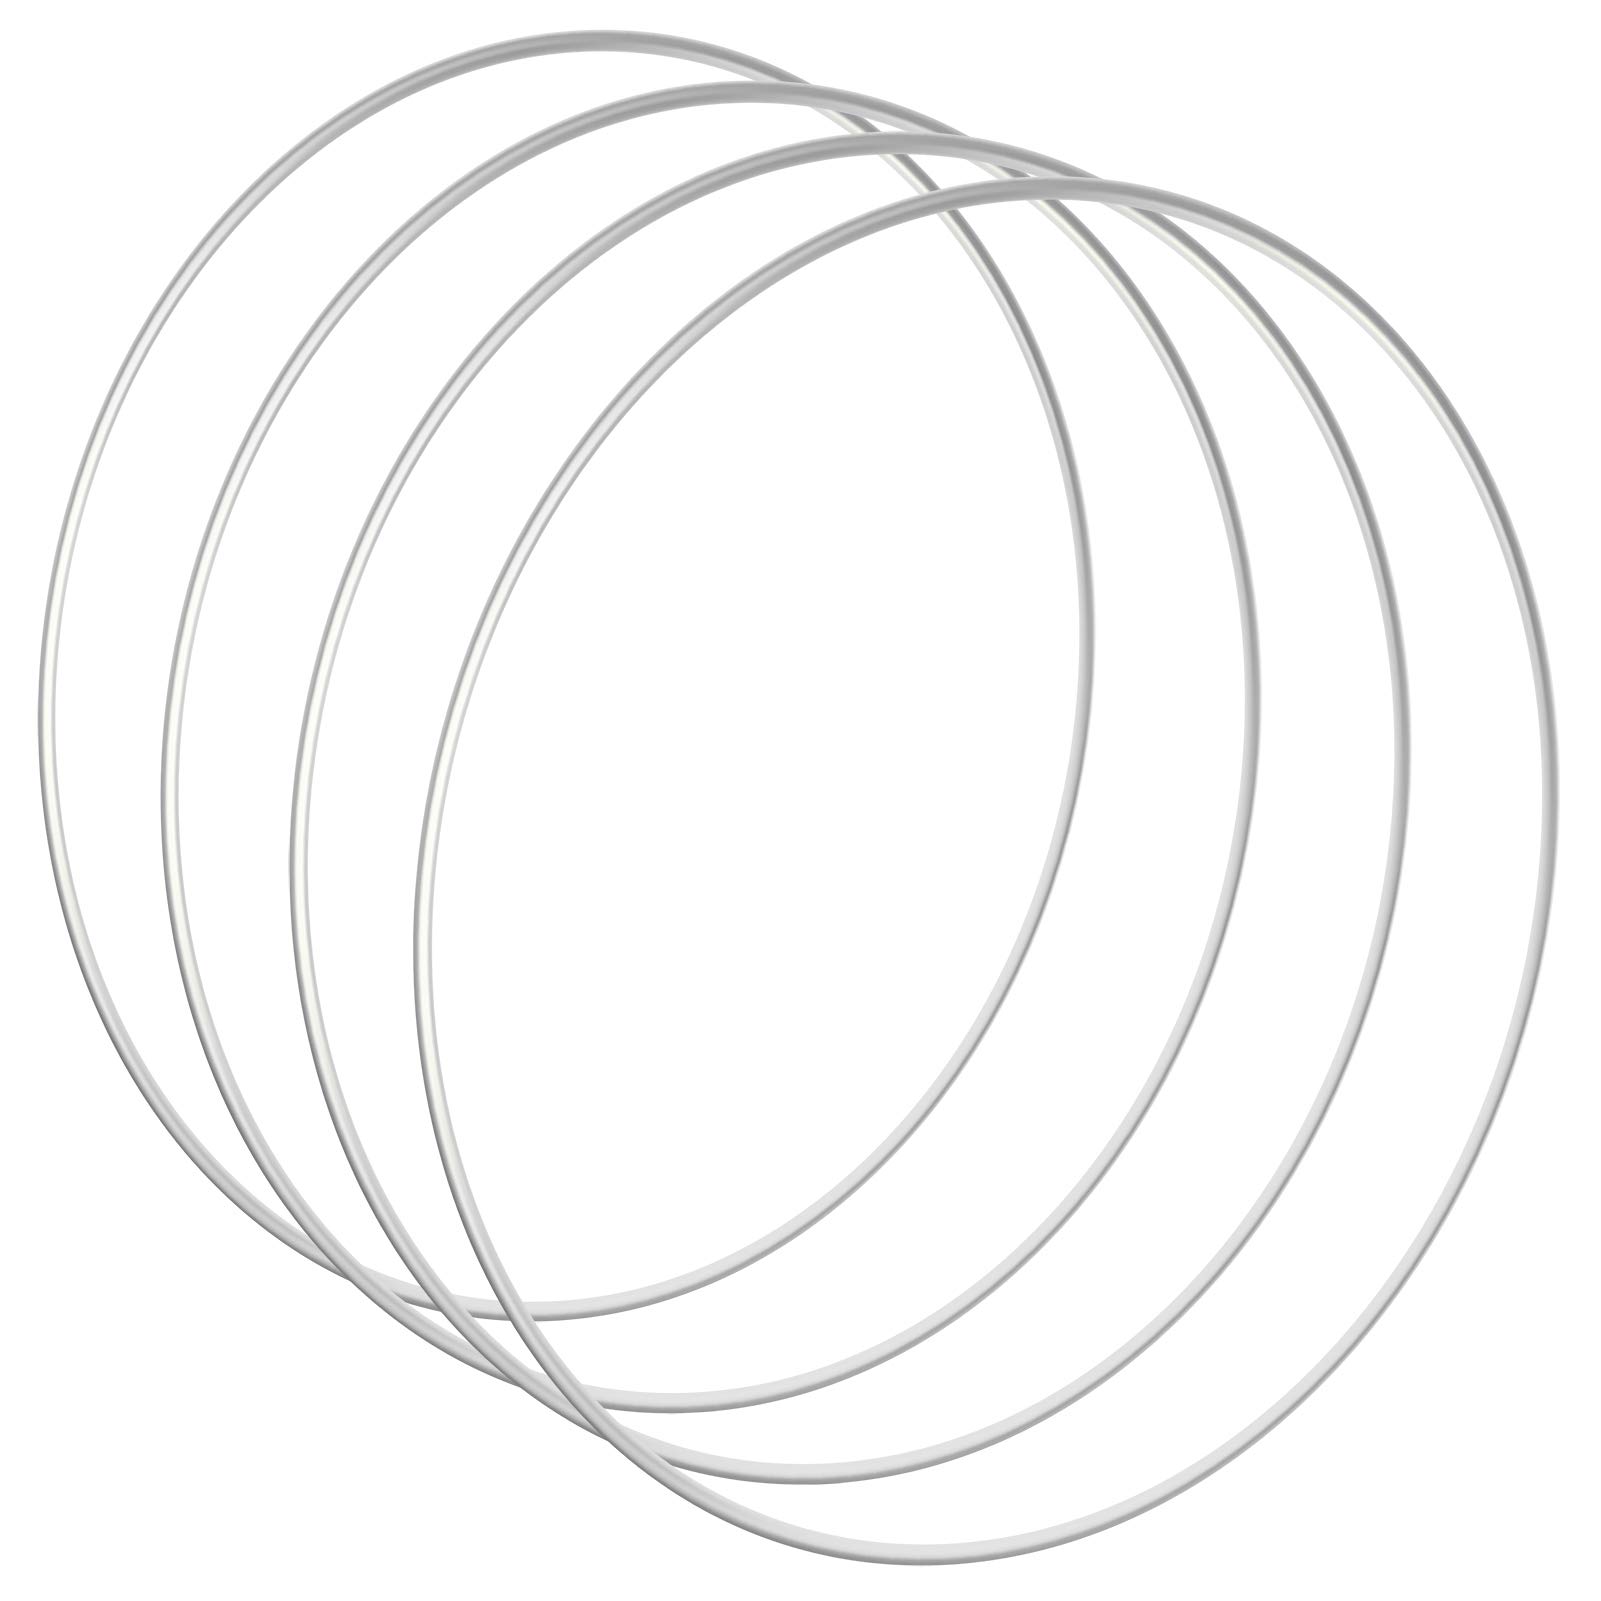 Sntieecr 4 PCS 12 inch / 30 cm Large Metal Ring Hoops Silver Metal